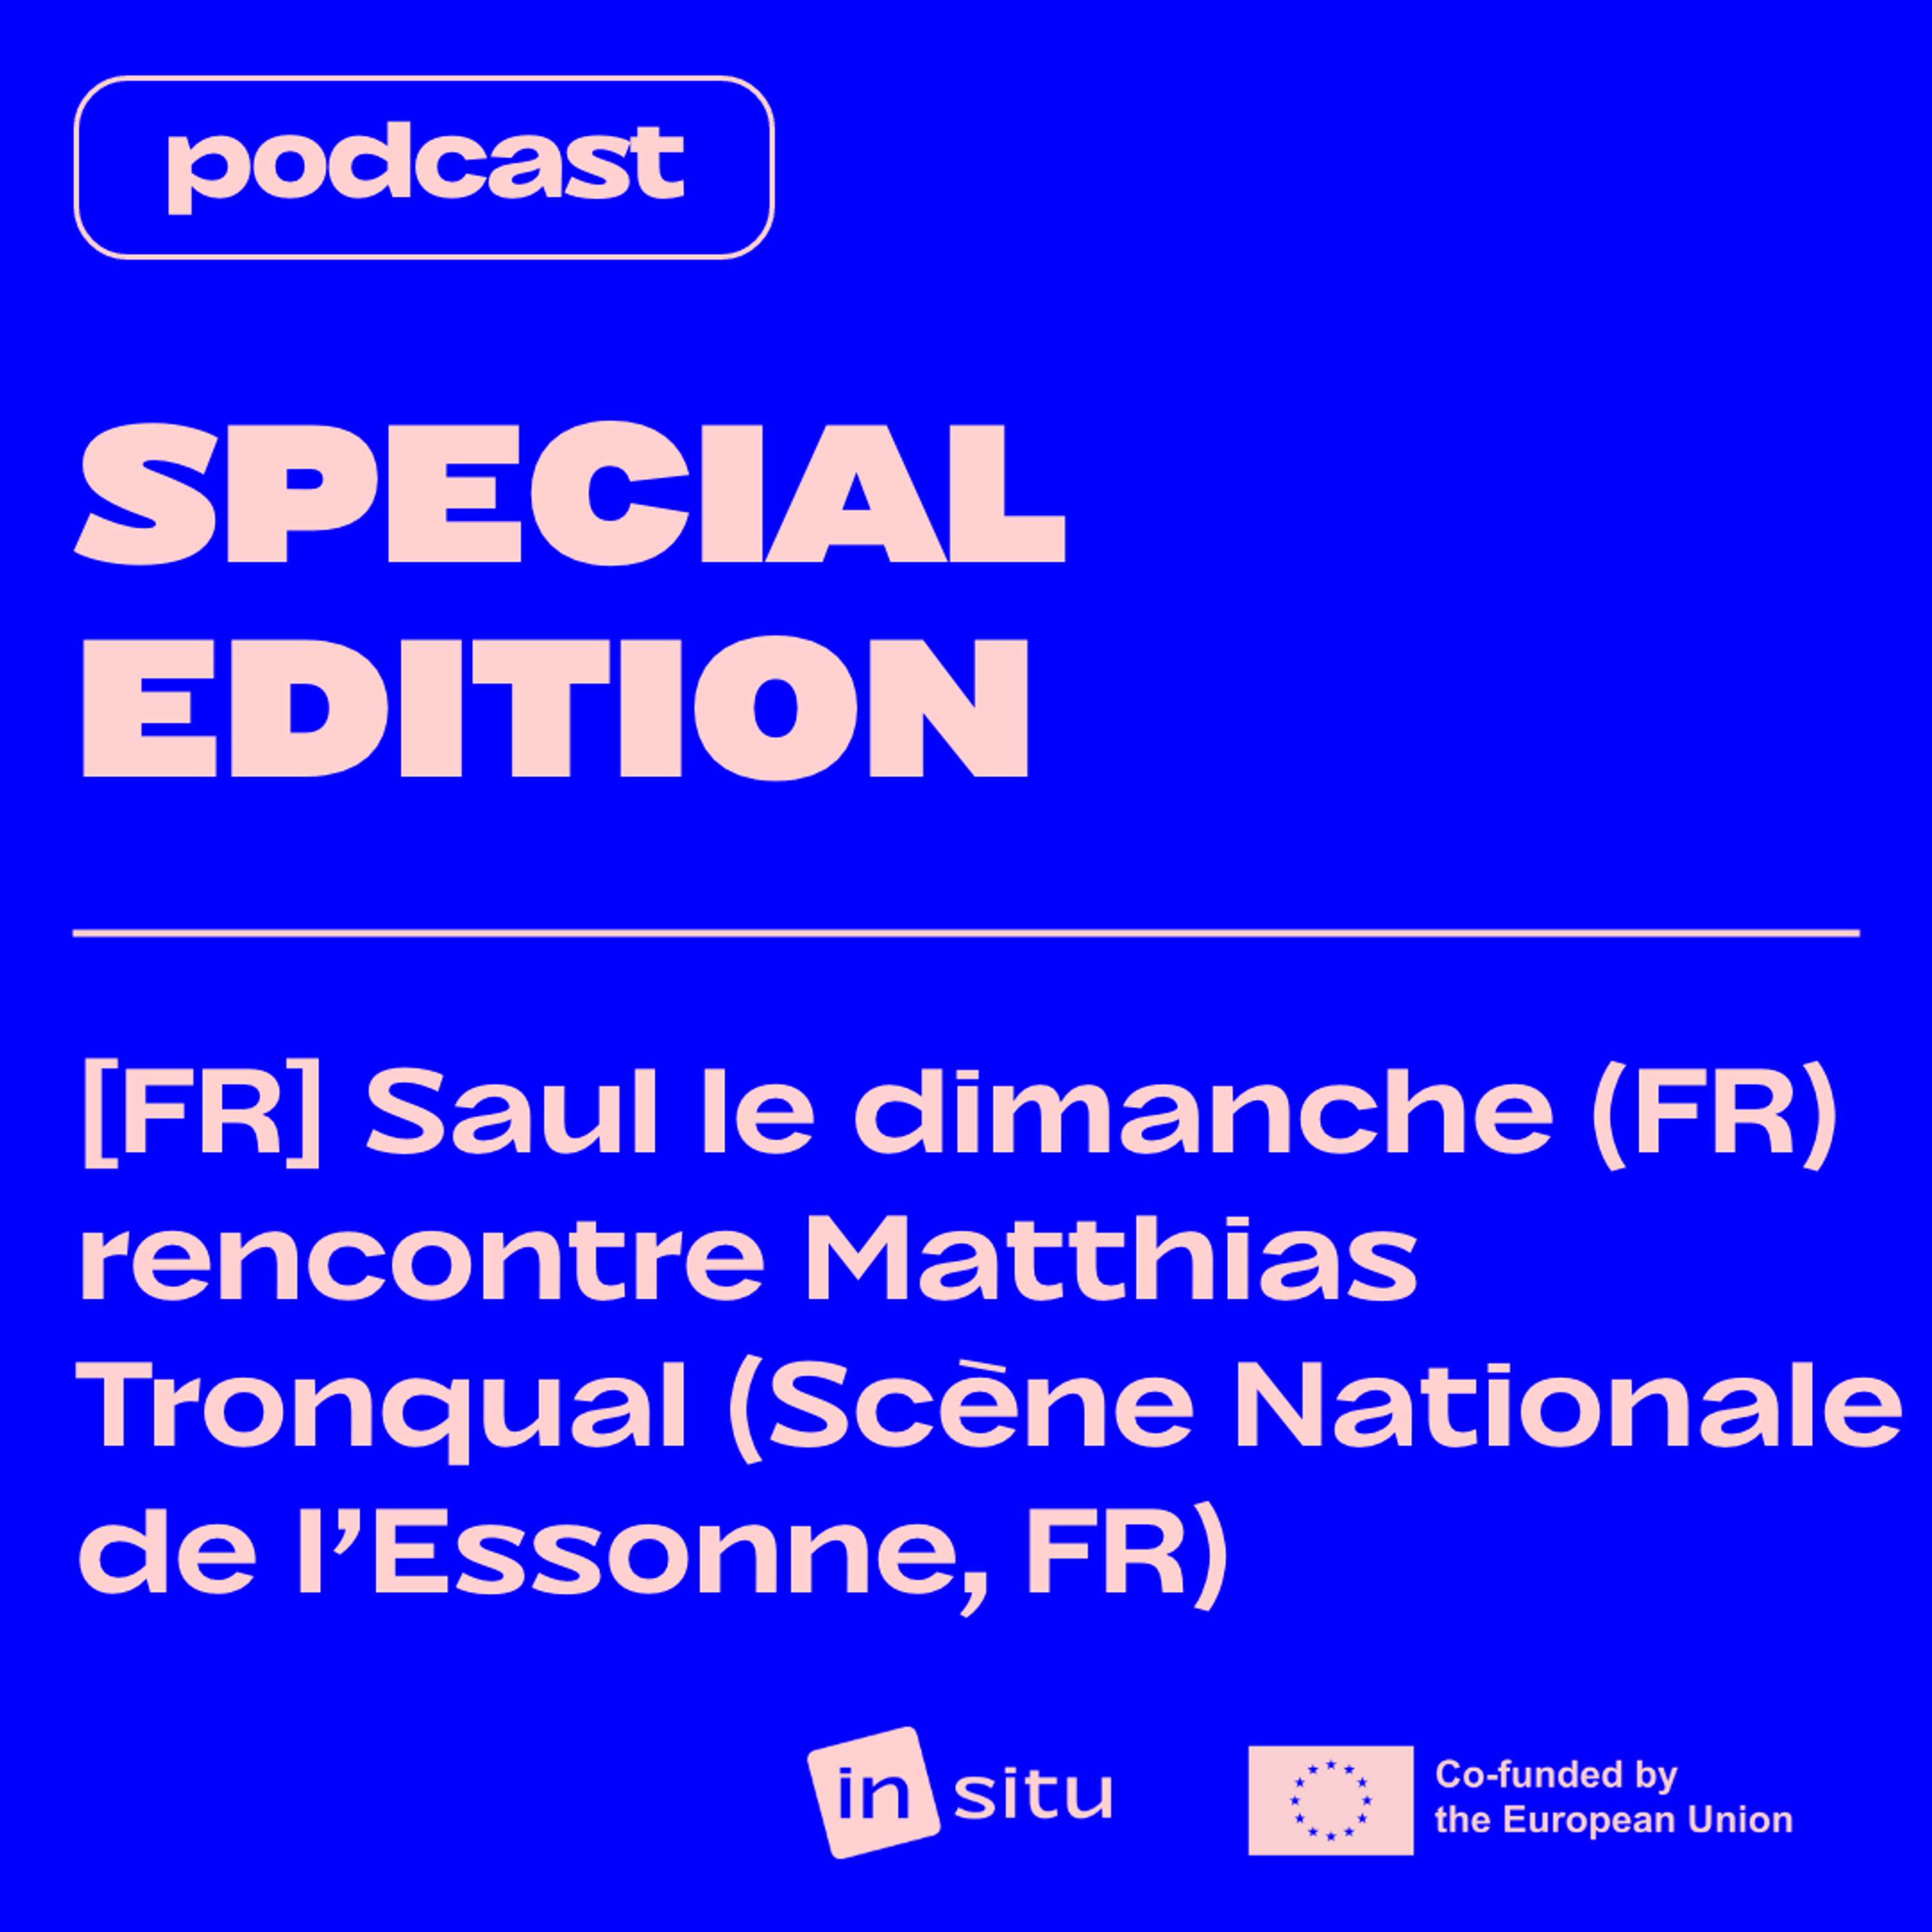 SPECIAL EDITION — [FR] Sauf le Dimanche rencontre Matthias Tronqual de la Scène nationale de l'Essonne